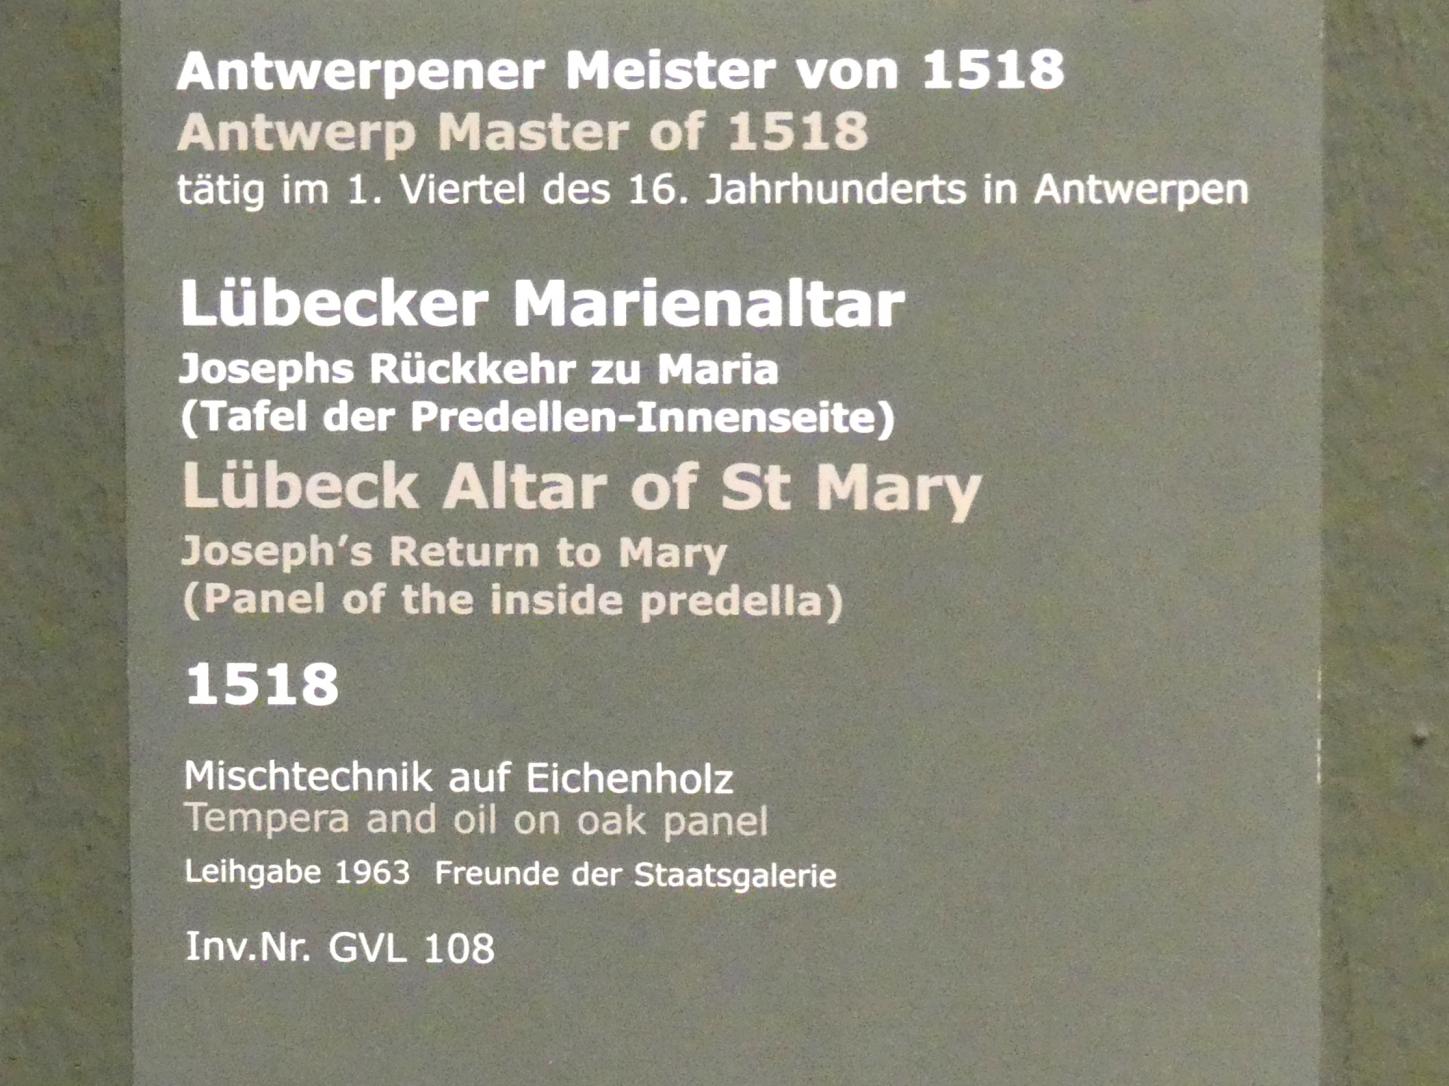 Meister von 1518 (1518), Lübecker Marienaltar - Josephs Rückkehr zu Maria, Stuttgart, Staatsgalerie, Niederländische Malerei 1, 1518, Bild 2/2